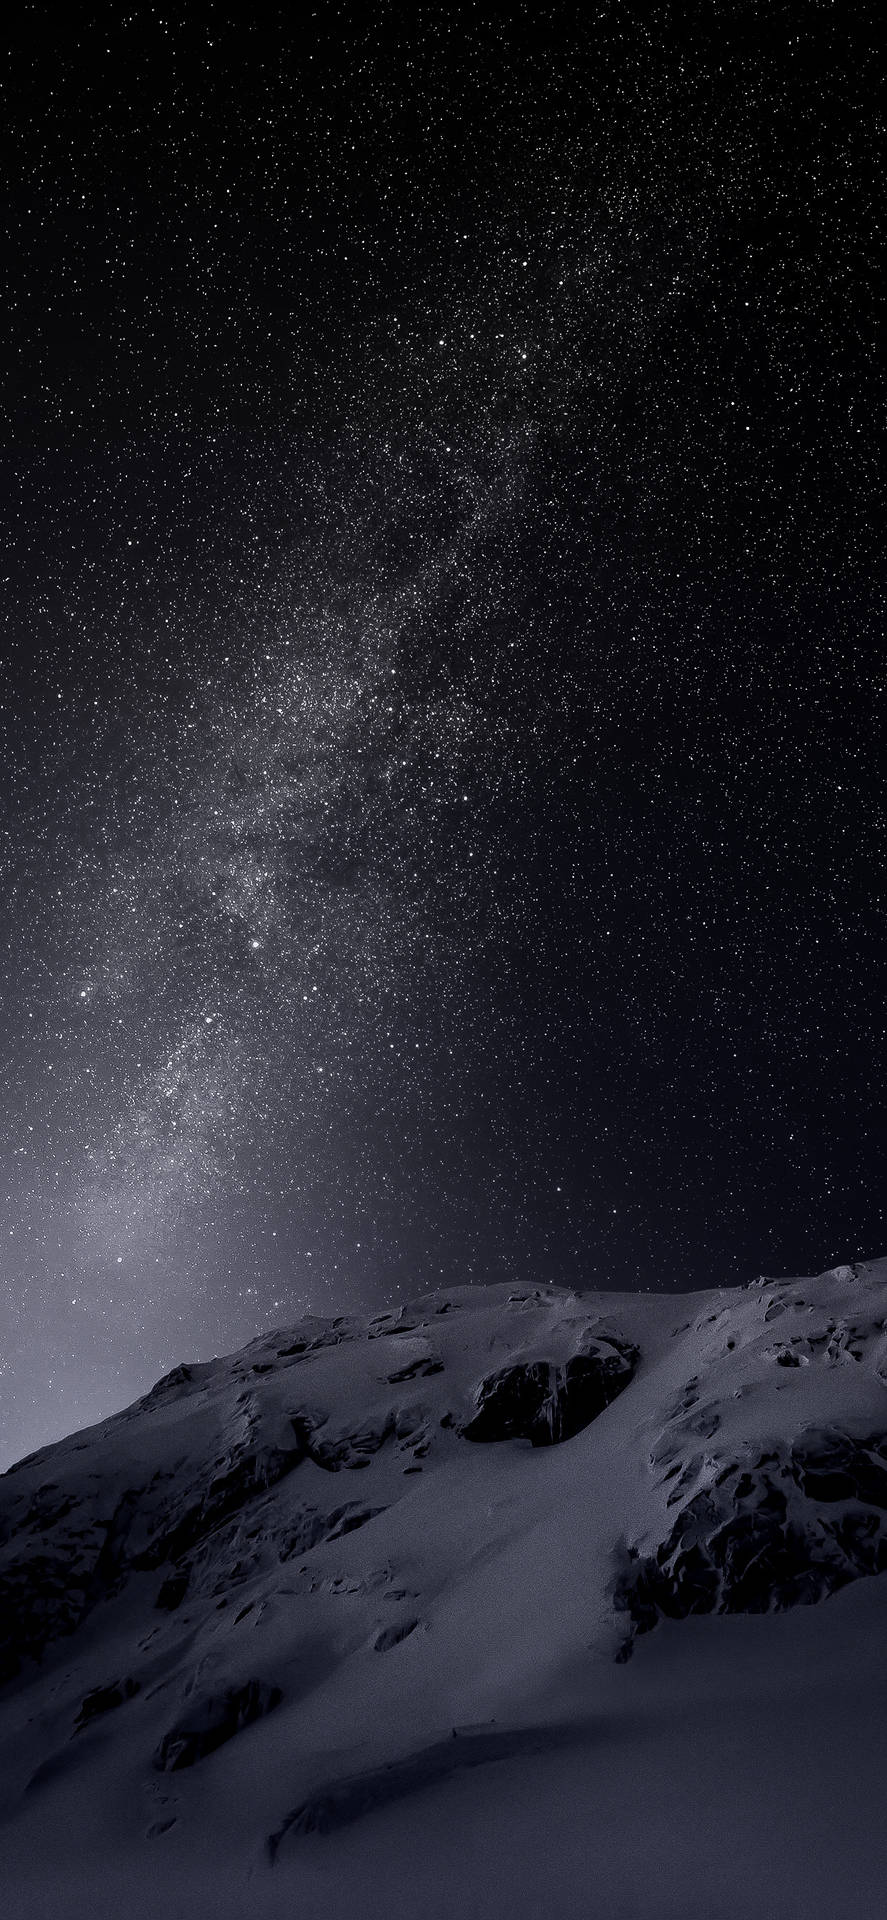 Dark Mode Snowy Mountain Under Countless Stars Background